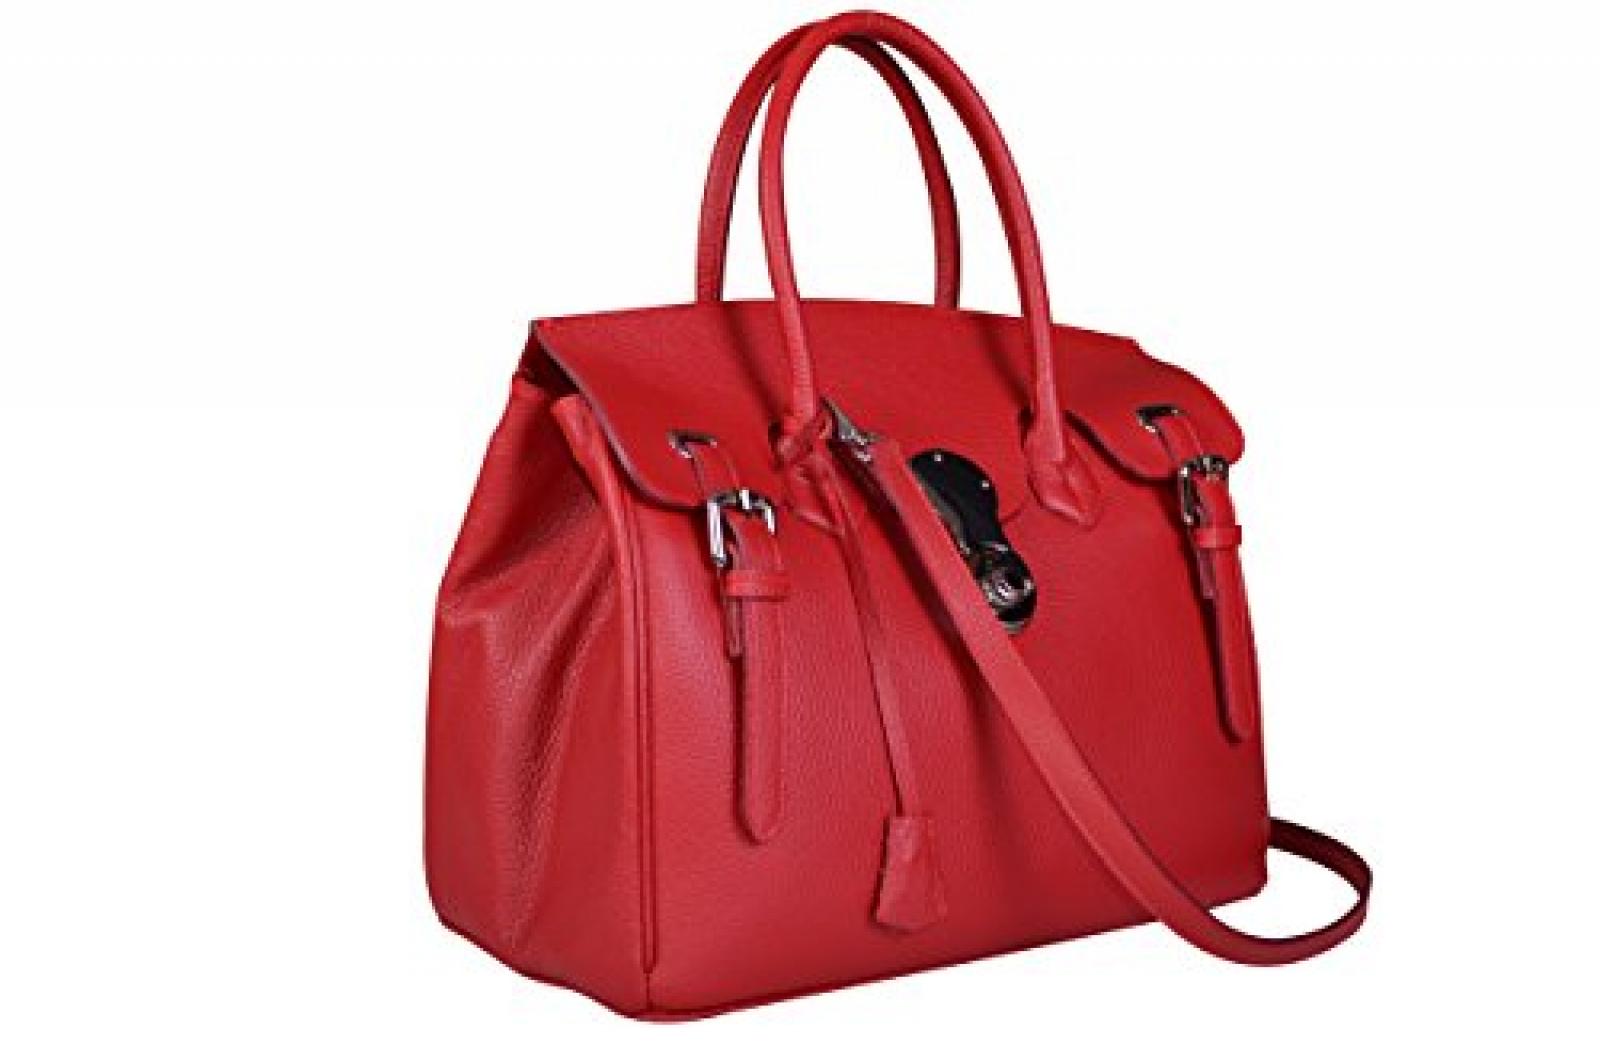 Maxima Milano Damentasche, Italienische echt Leder, Henkeltasche, Handtaschen Rot, Schultertasche mit Schulterriemen - Made in Italy 